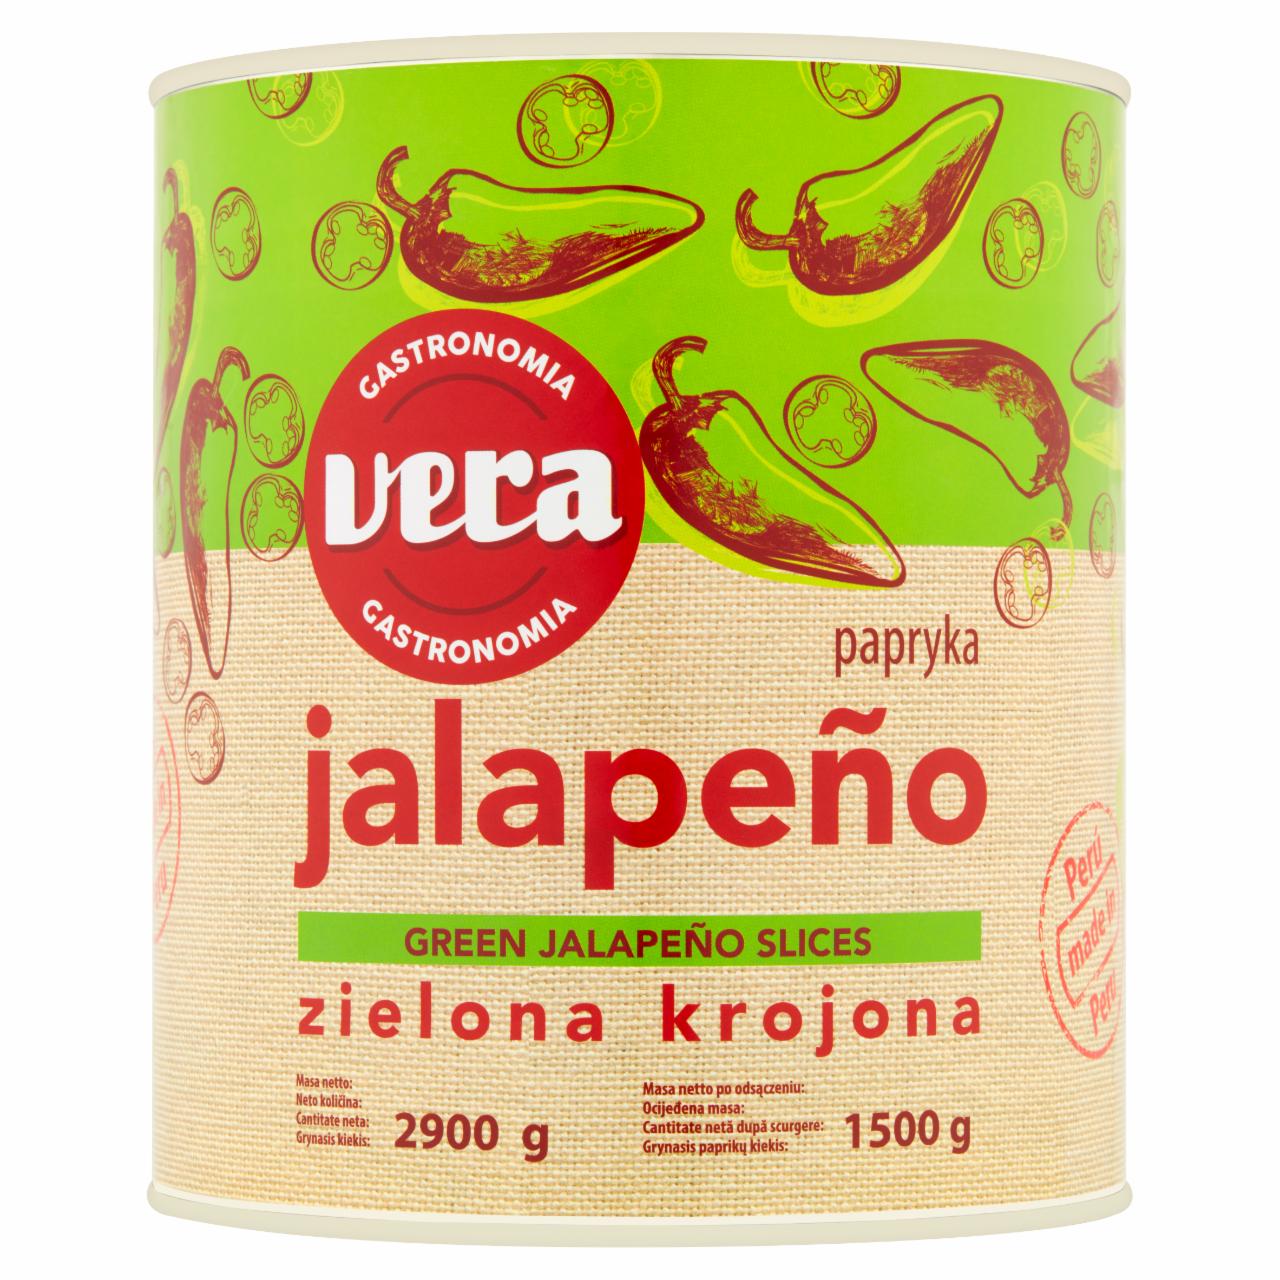 Zdjęcia - Vera Gastronomia Papryka zielona krojona Jalapeño w zalewie 2900 g